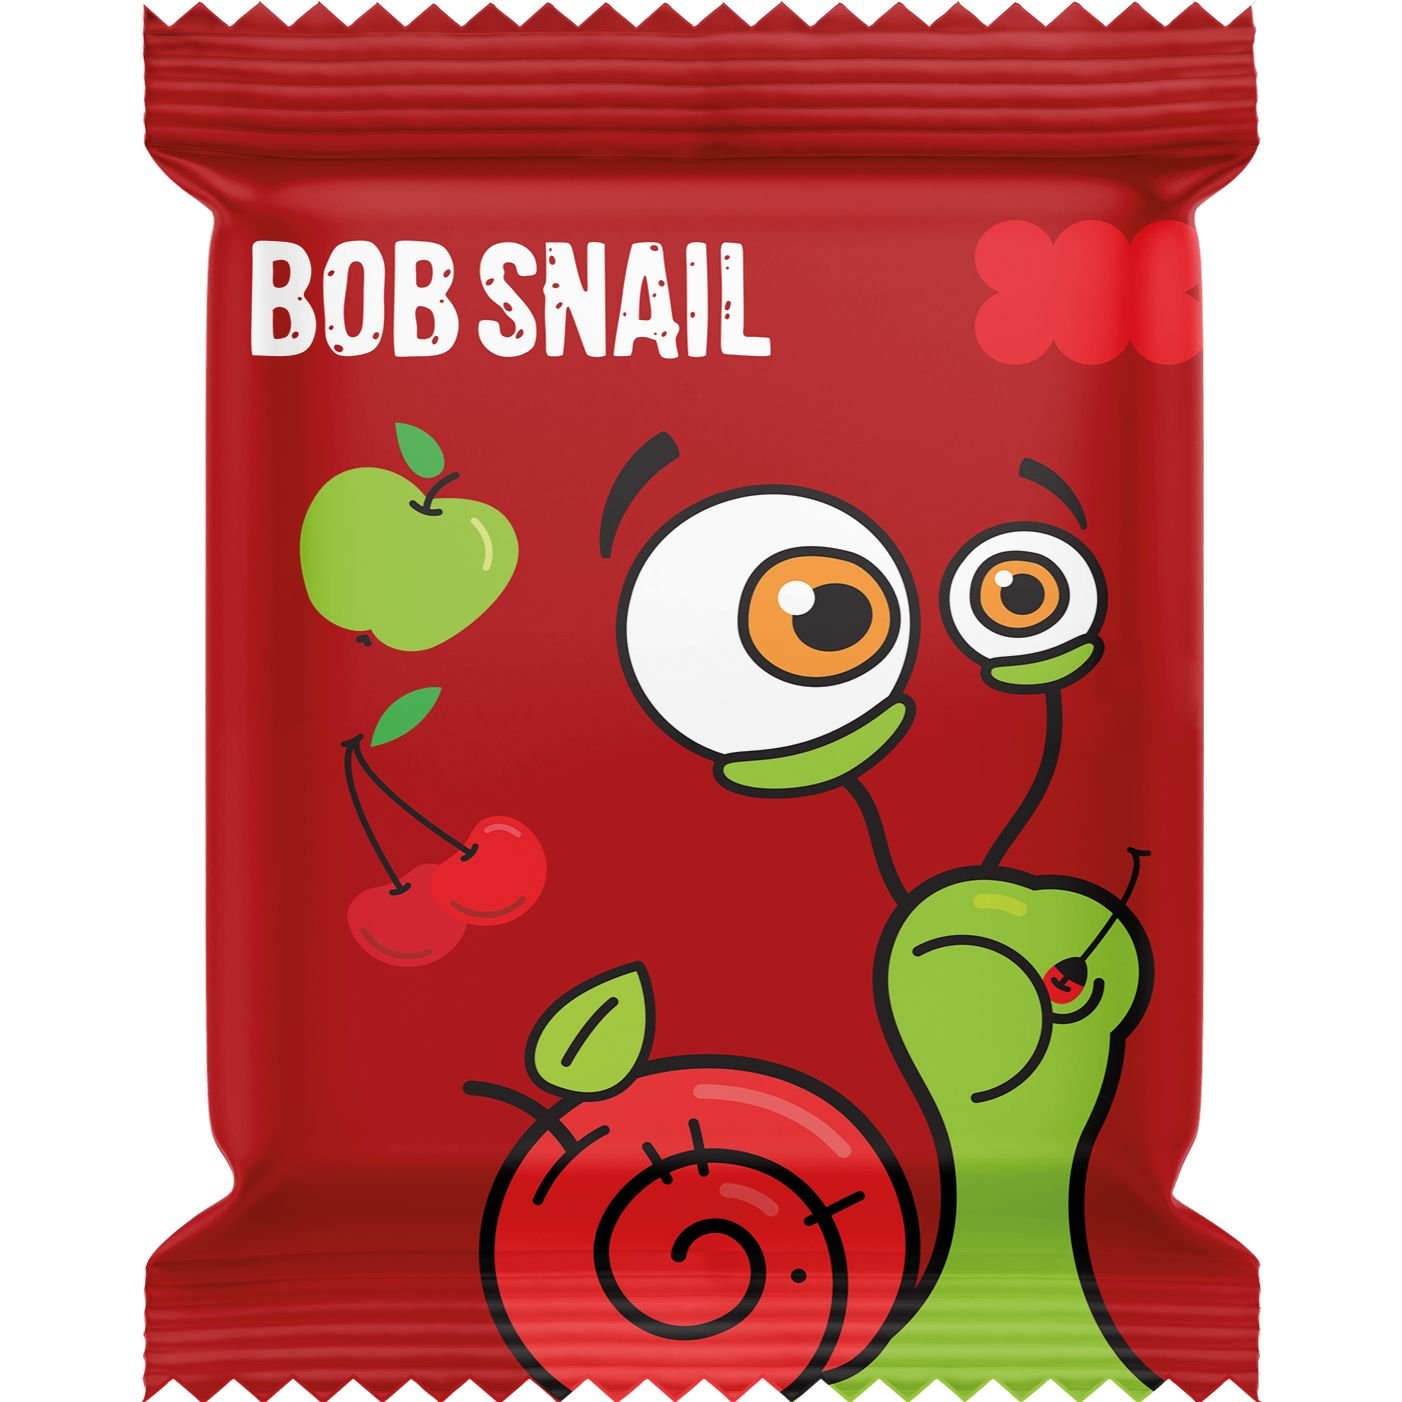 Фруктовые яблочно-вишневые конфеты Bob Snail 100 г (10 шт. х 10 г) - фото 2